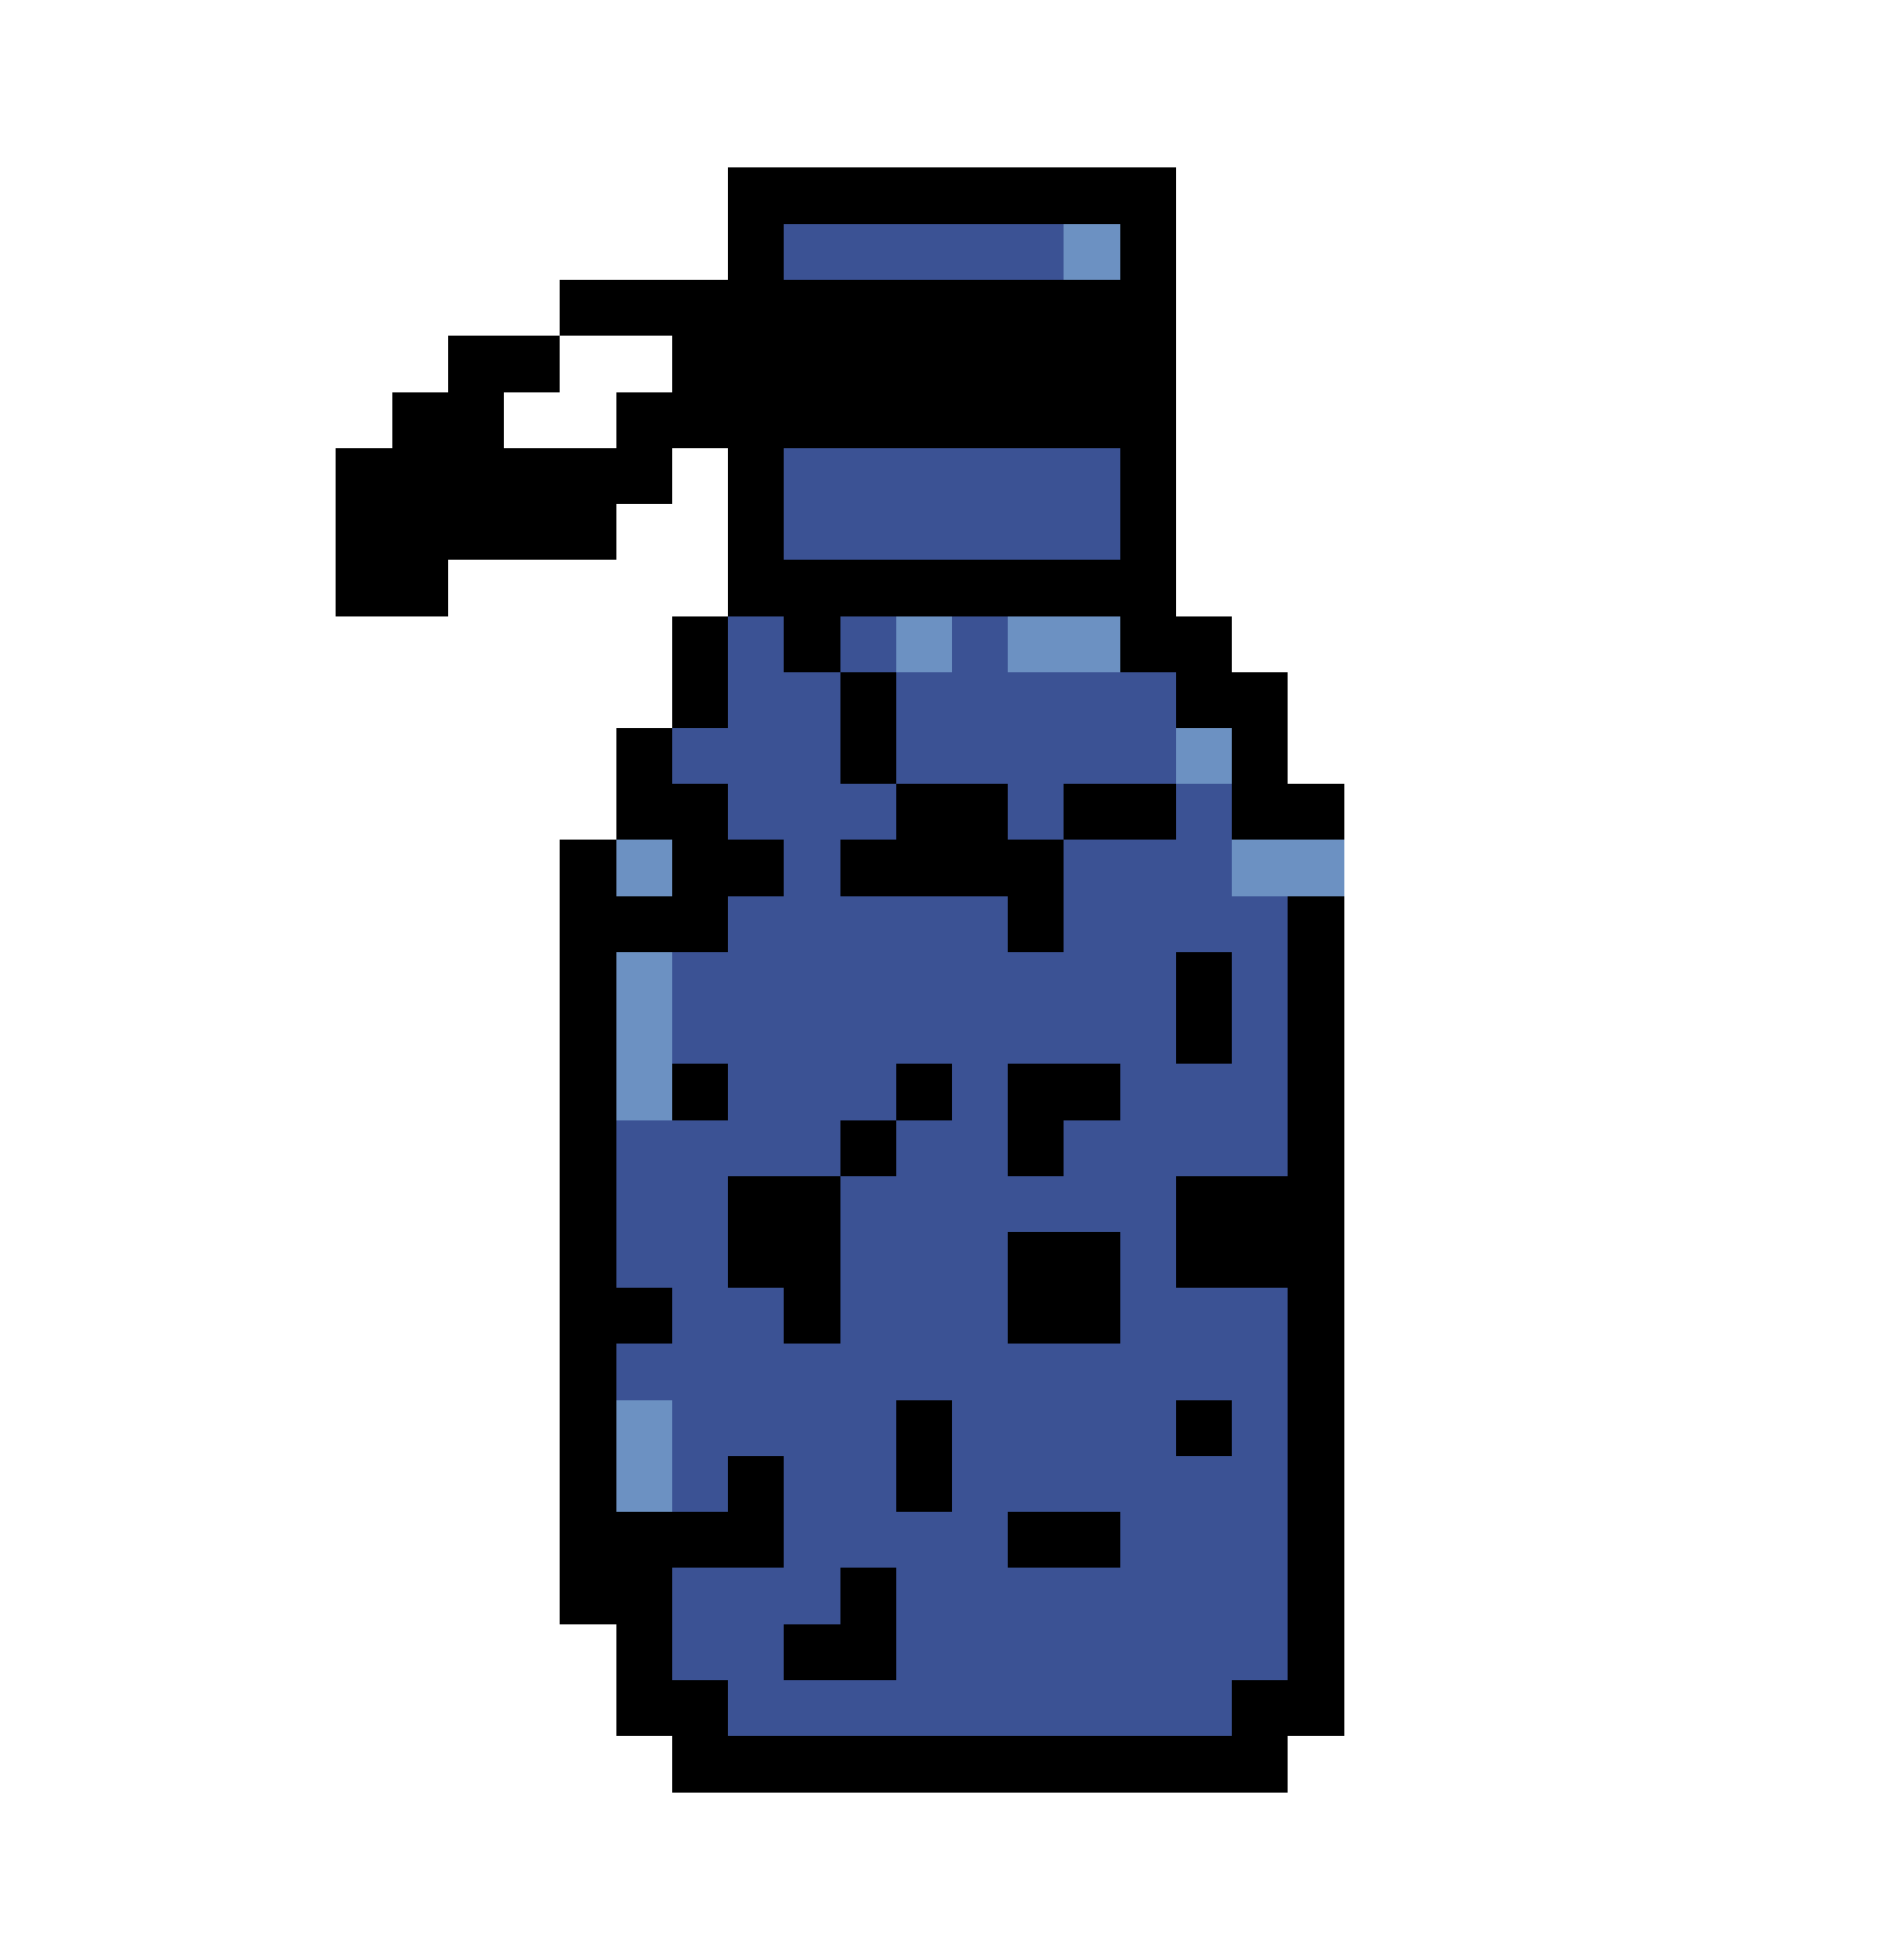 Pixel art of a water bottle